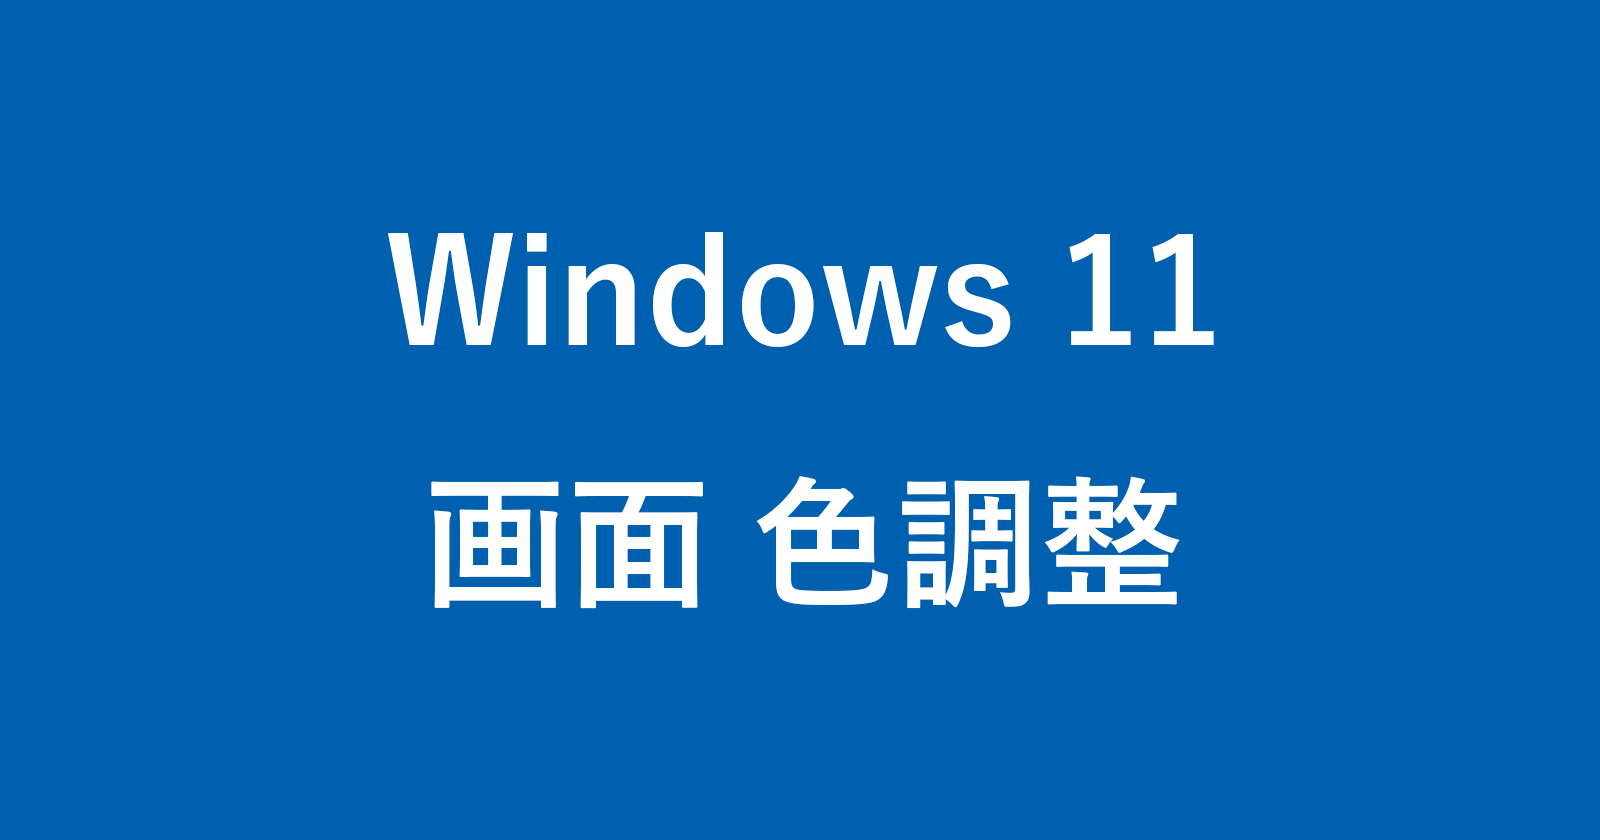 windows 11 display color